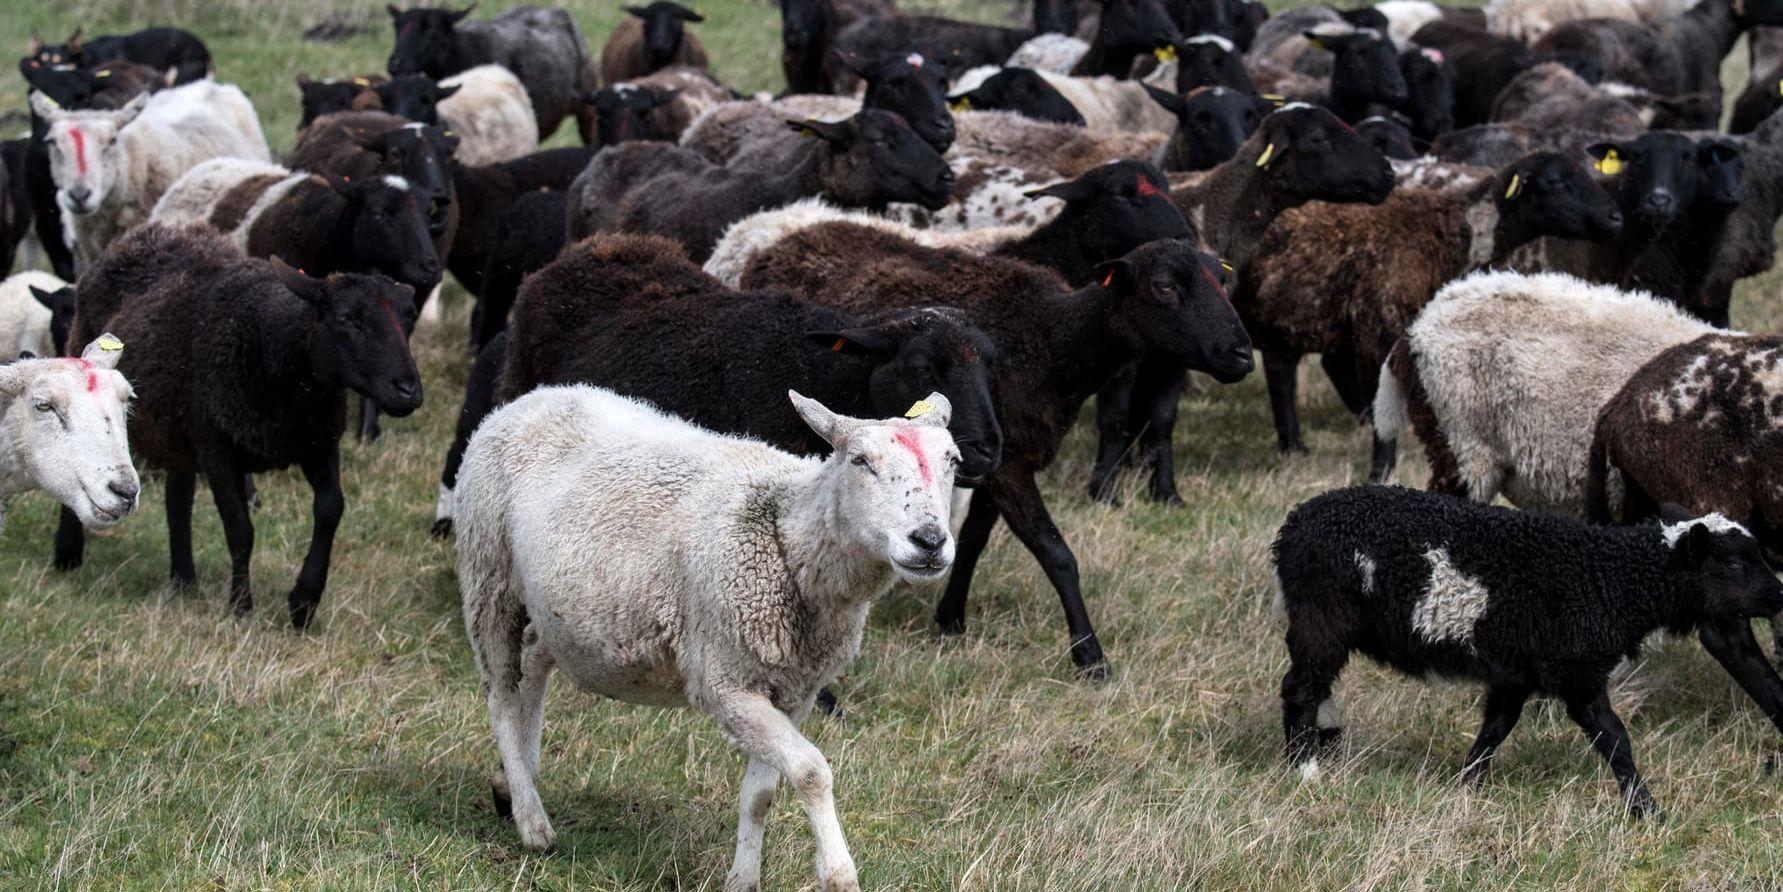 En djurägare i Halland är polisanmäld för misstänkt djurplågeri och brott mot livsmedelslagen sedan ett 60-tal avlivade djur hittats på gården. Arkivbild på får och lamm från en annan gård.